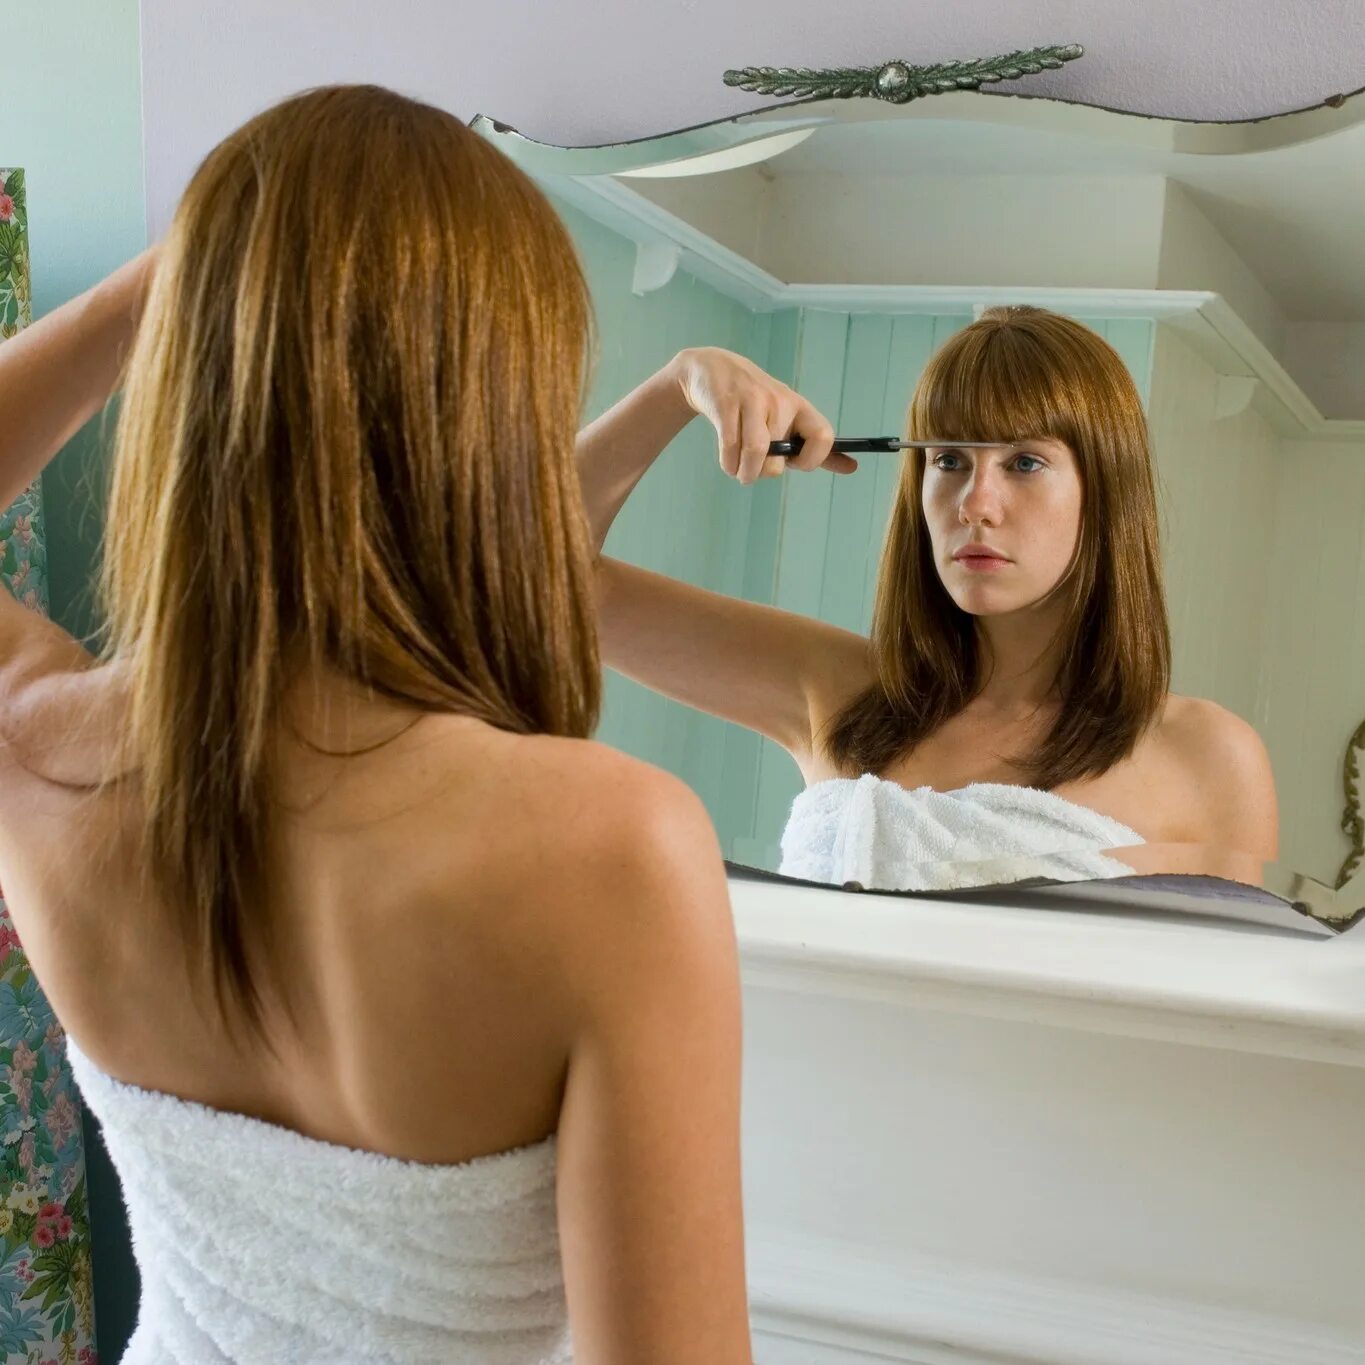 Подравнять волосы. Прическа девочка у зеркала. Девушка обрезает волосы перед зеркалом. Обои которые скрывают чёлку. Подруга подстригла подругу